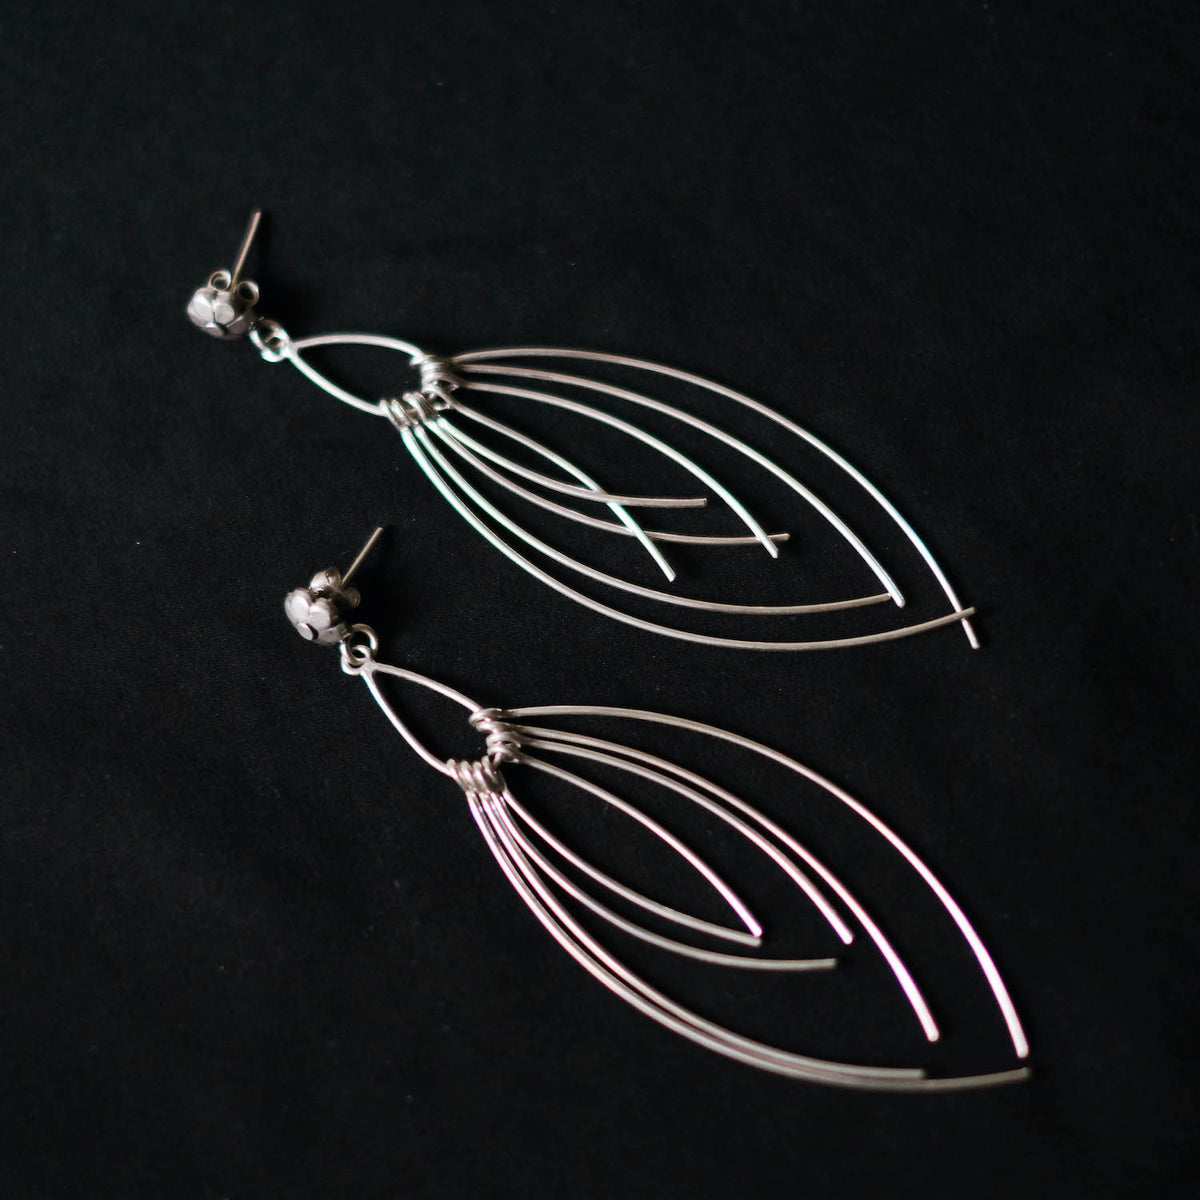 Pendientes artesanales hechos a mano con plata de ley. Longitud 10 cm. Peso 14 g. Hand made silver earrings. Lula Máiz